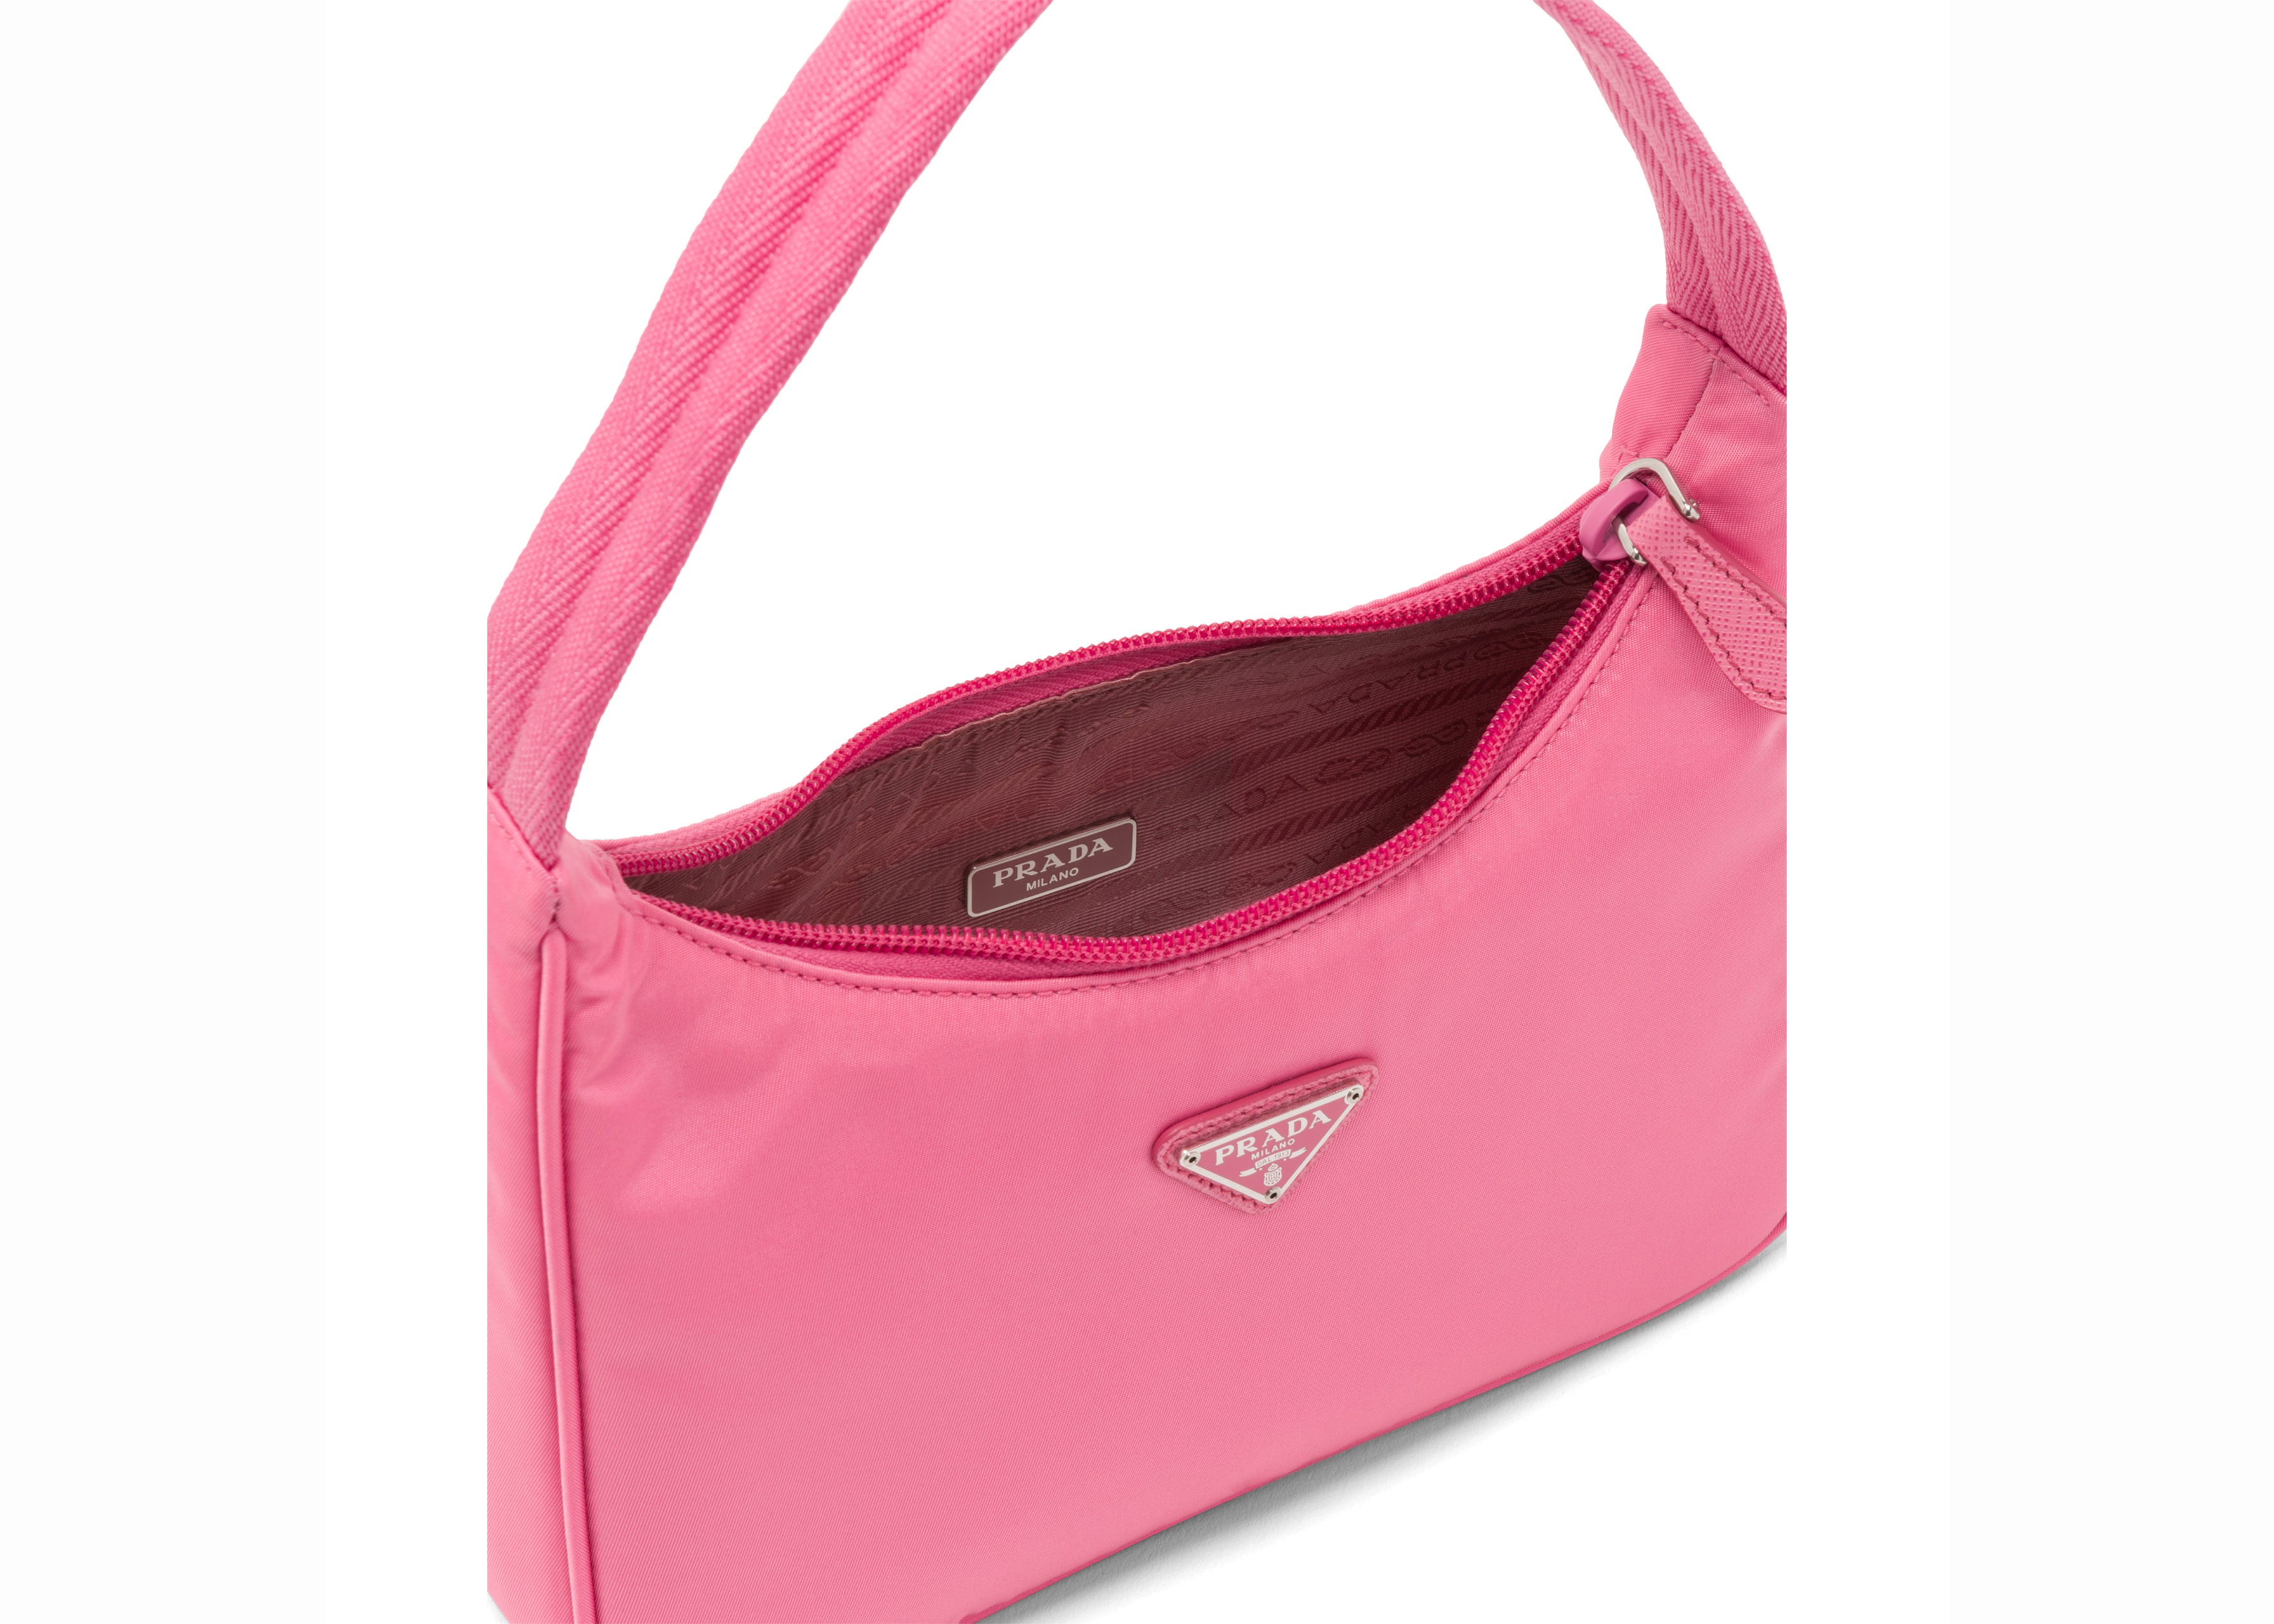 prada handbags pink